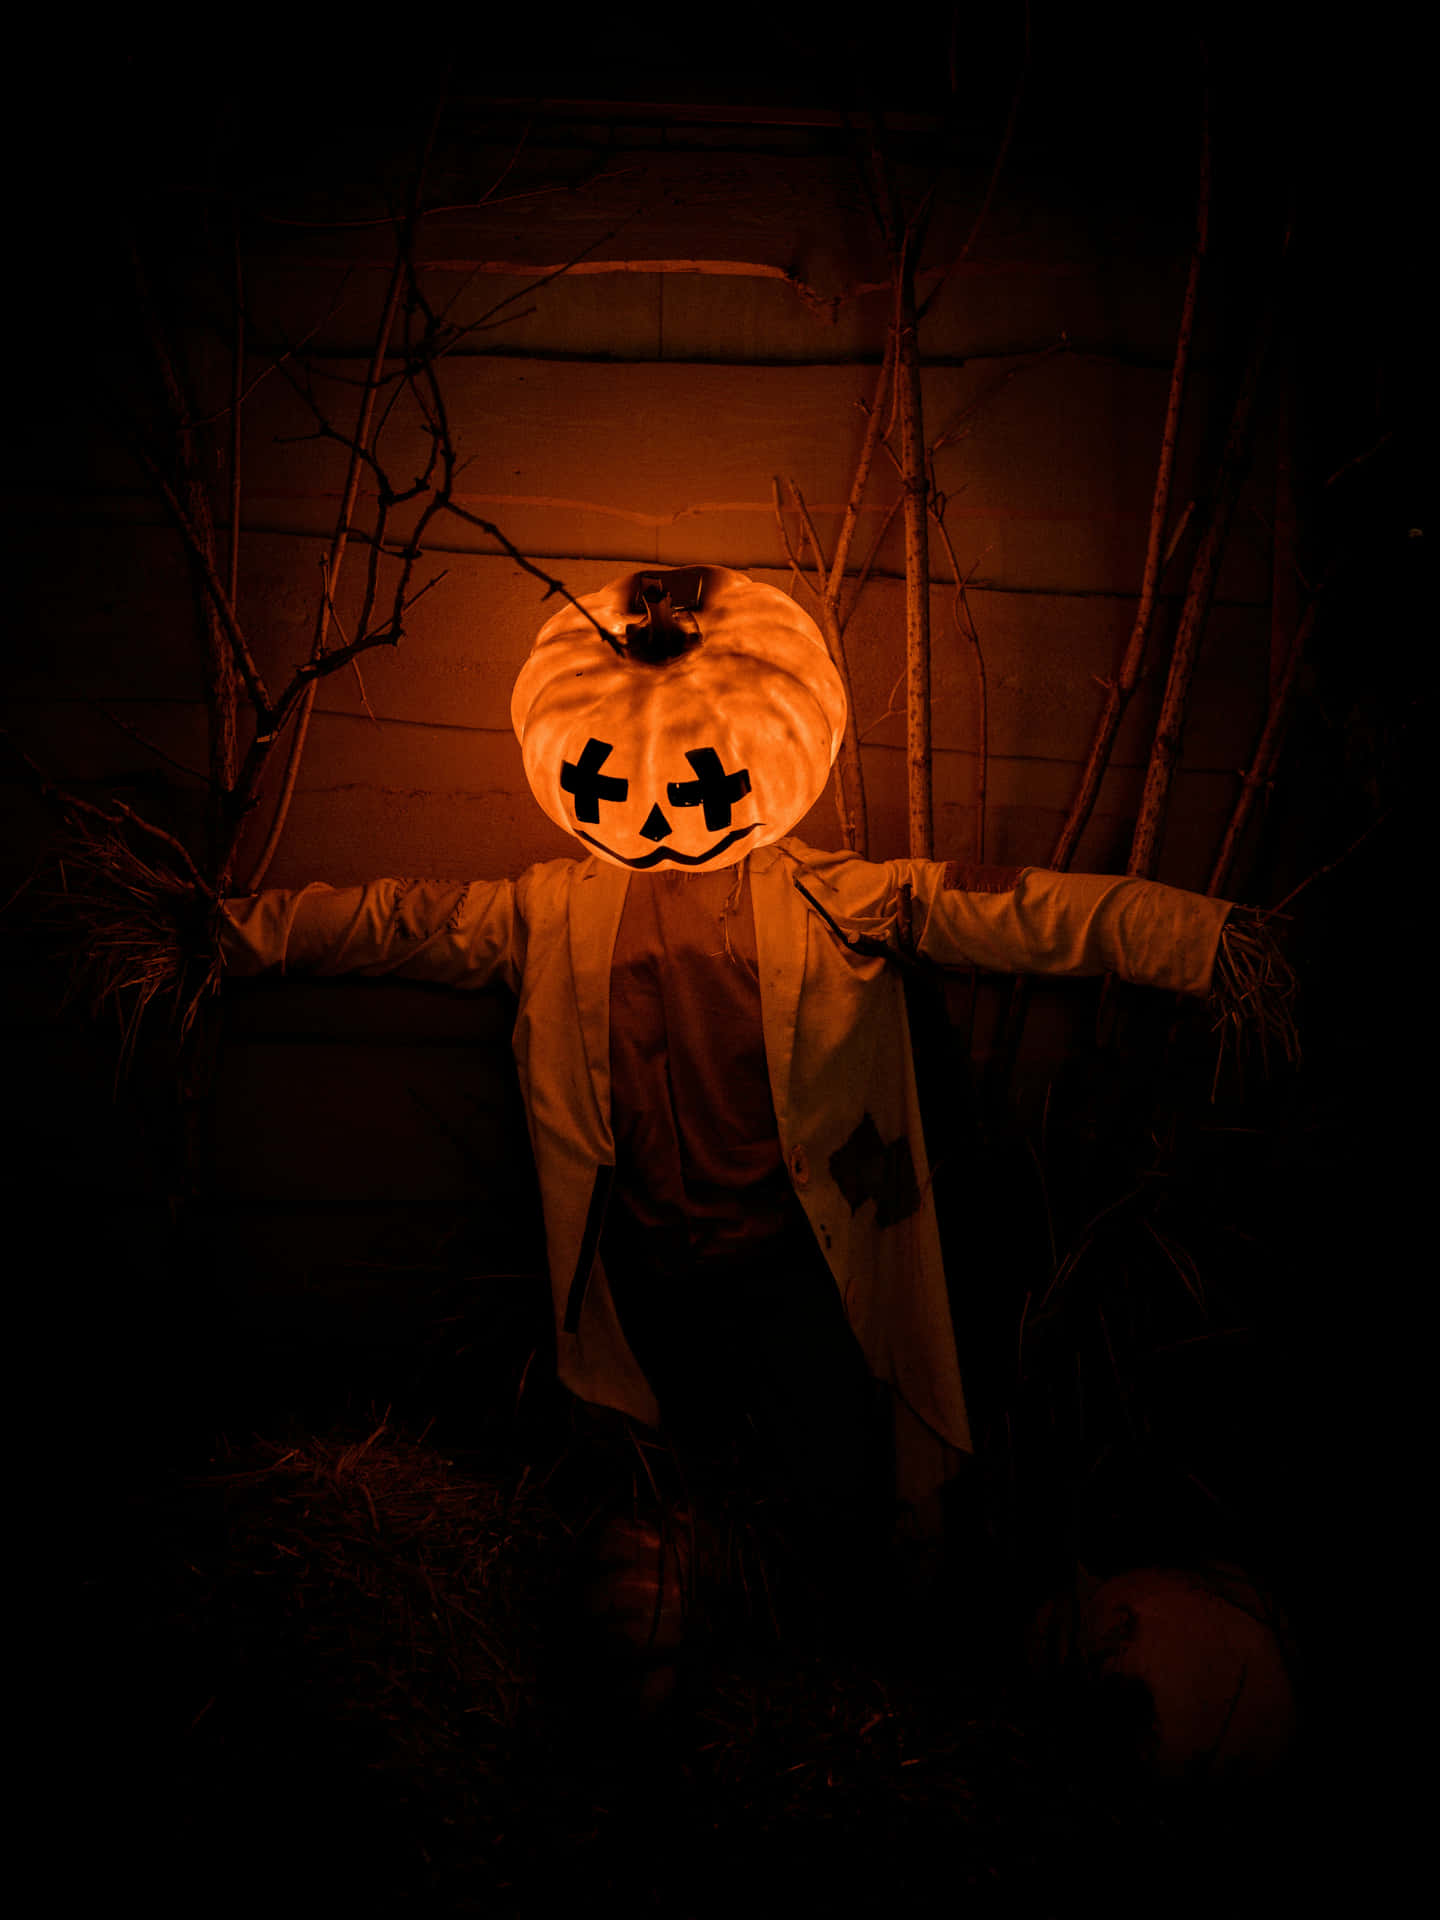 Pumpkin Head Scarecrow Nighttime Halloween Wallpaper